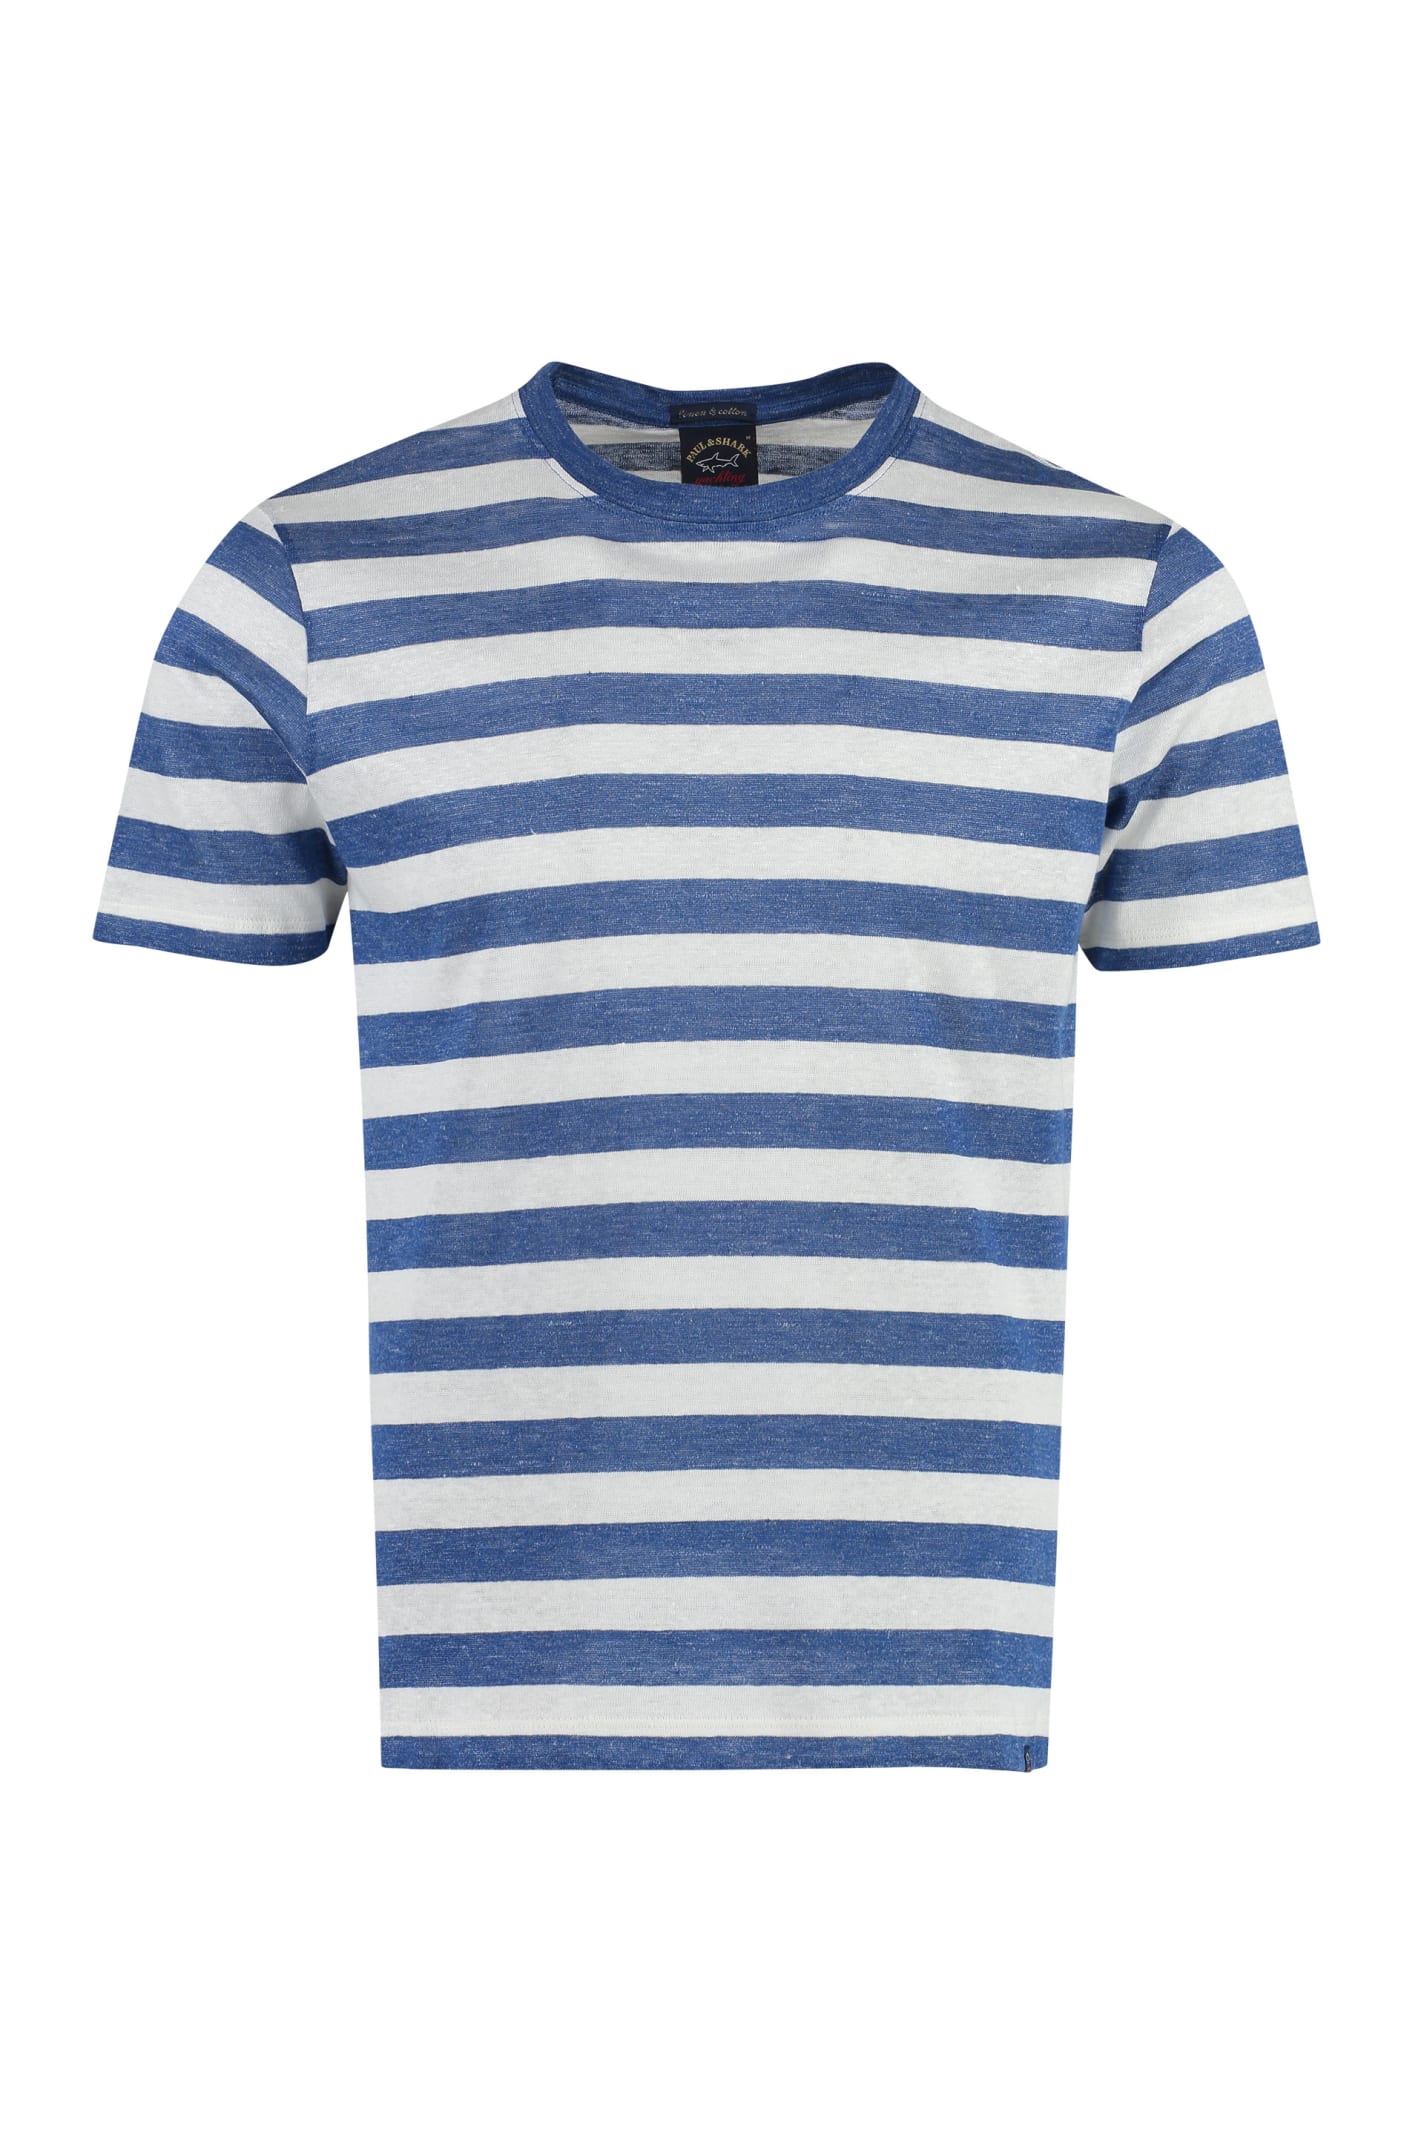 Paul&amp;shark Striped Linen-cotton Blend T-shirt In Blue